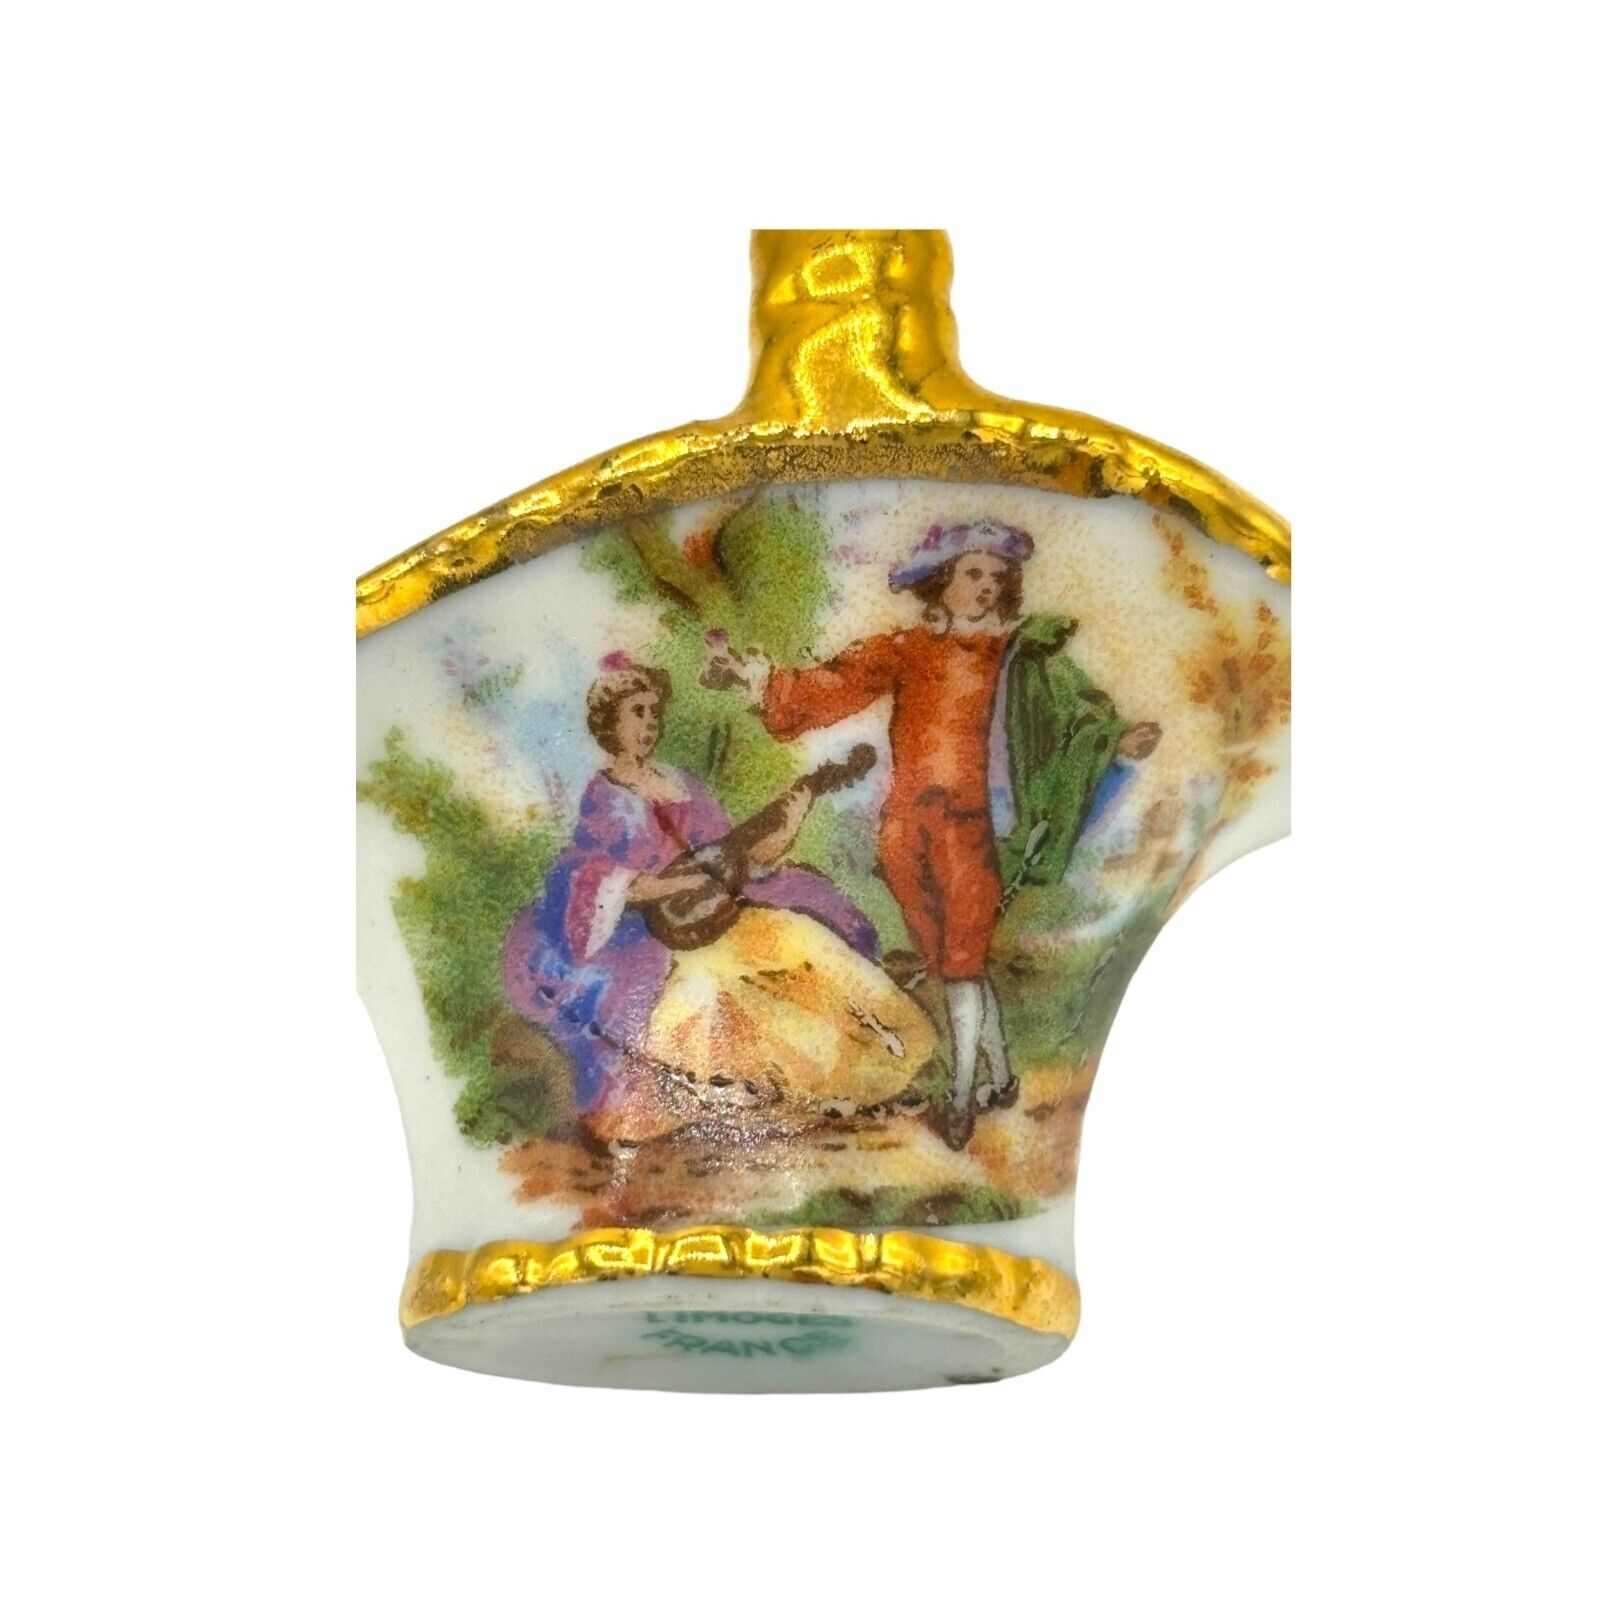 Vintage Mini Miniature Limoges Porcelain Basket France Music Theme Gold Trim 2x2